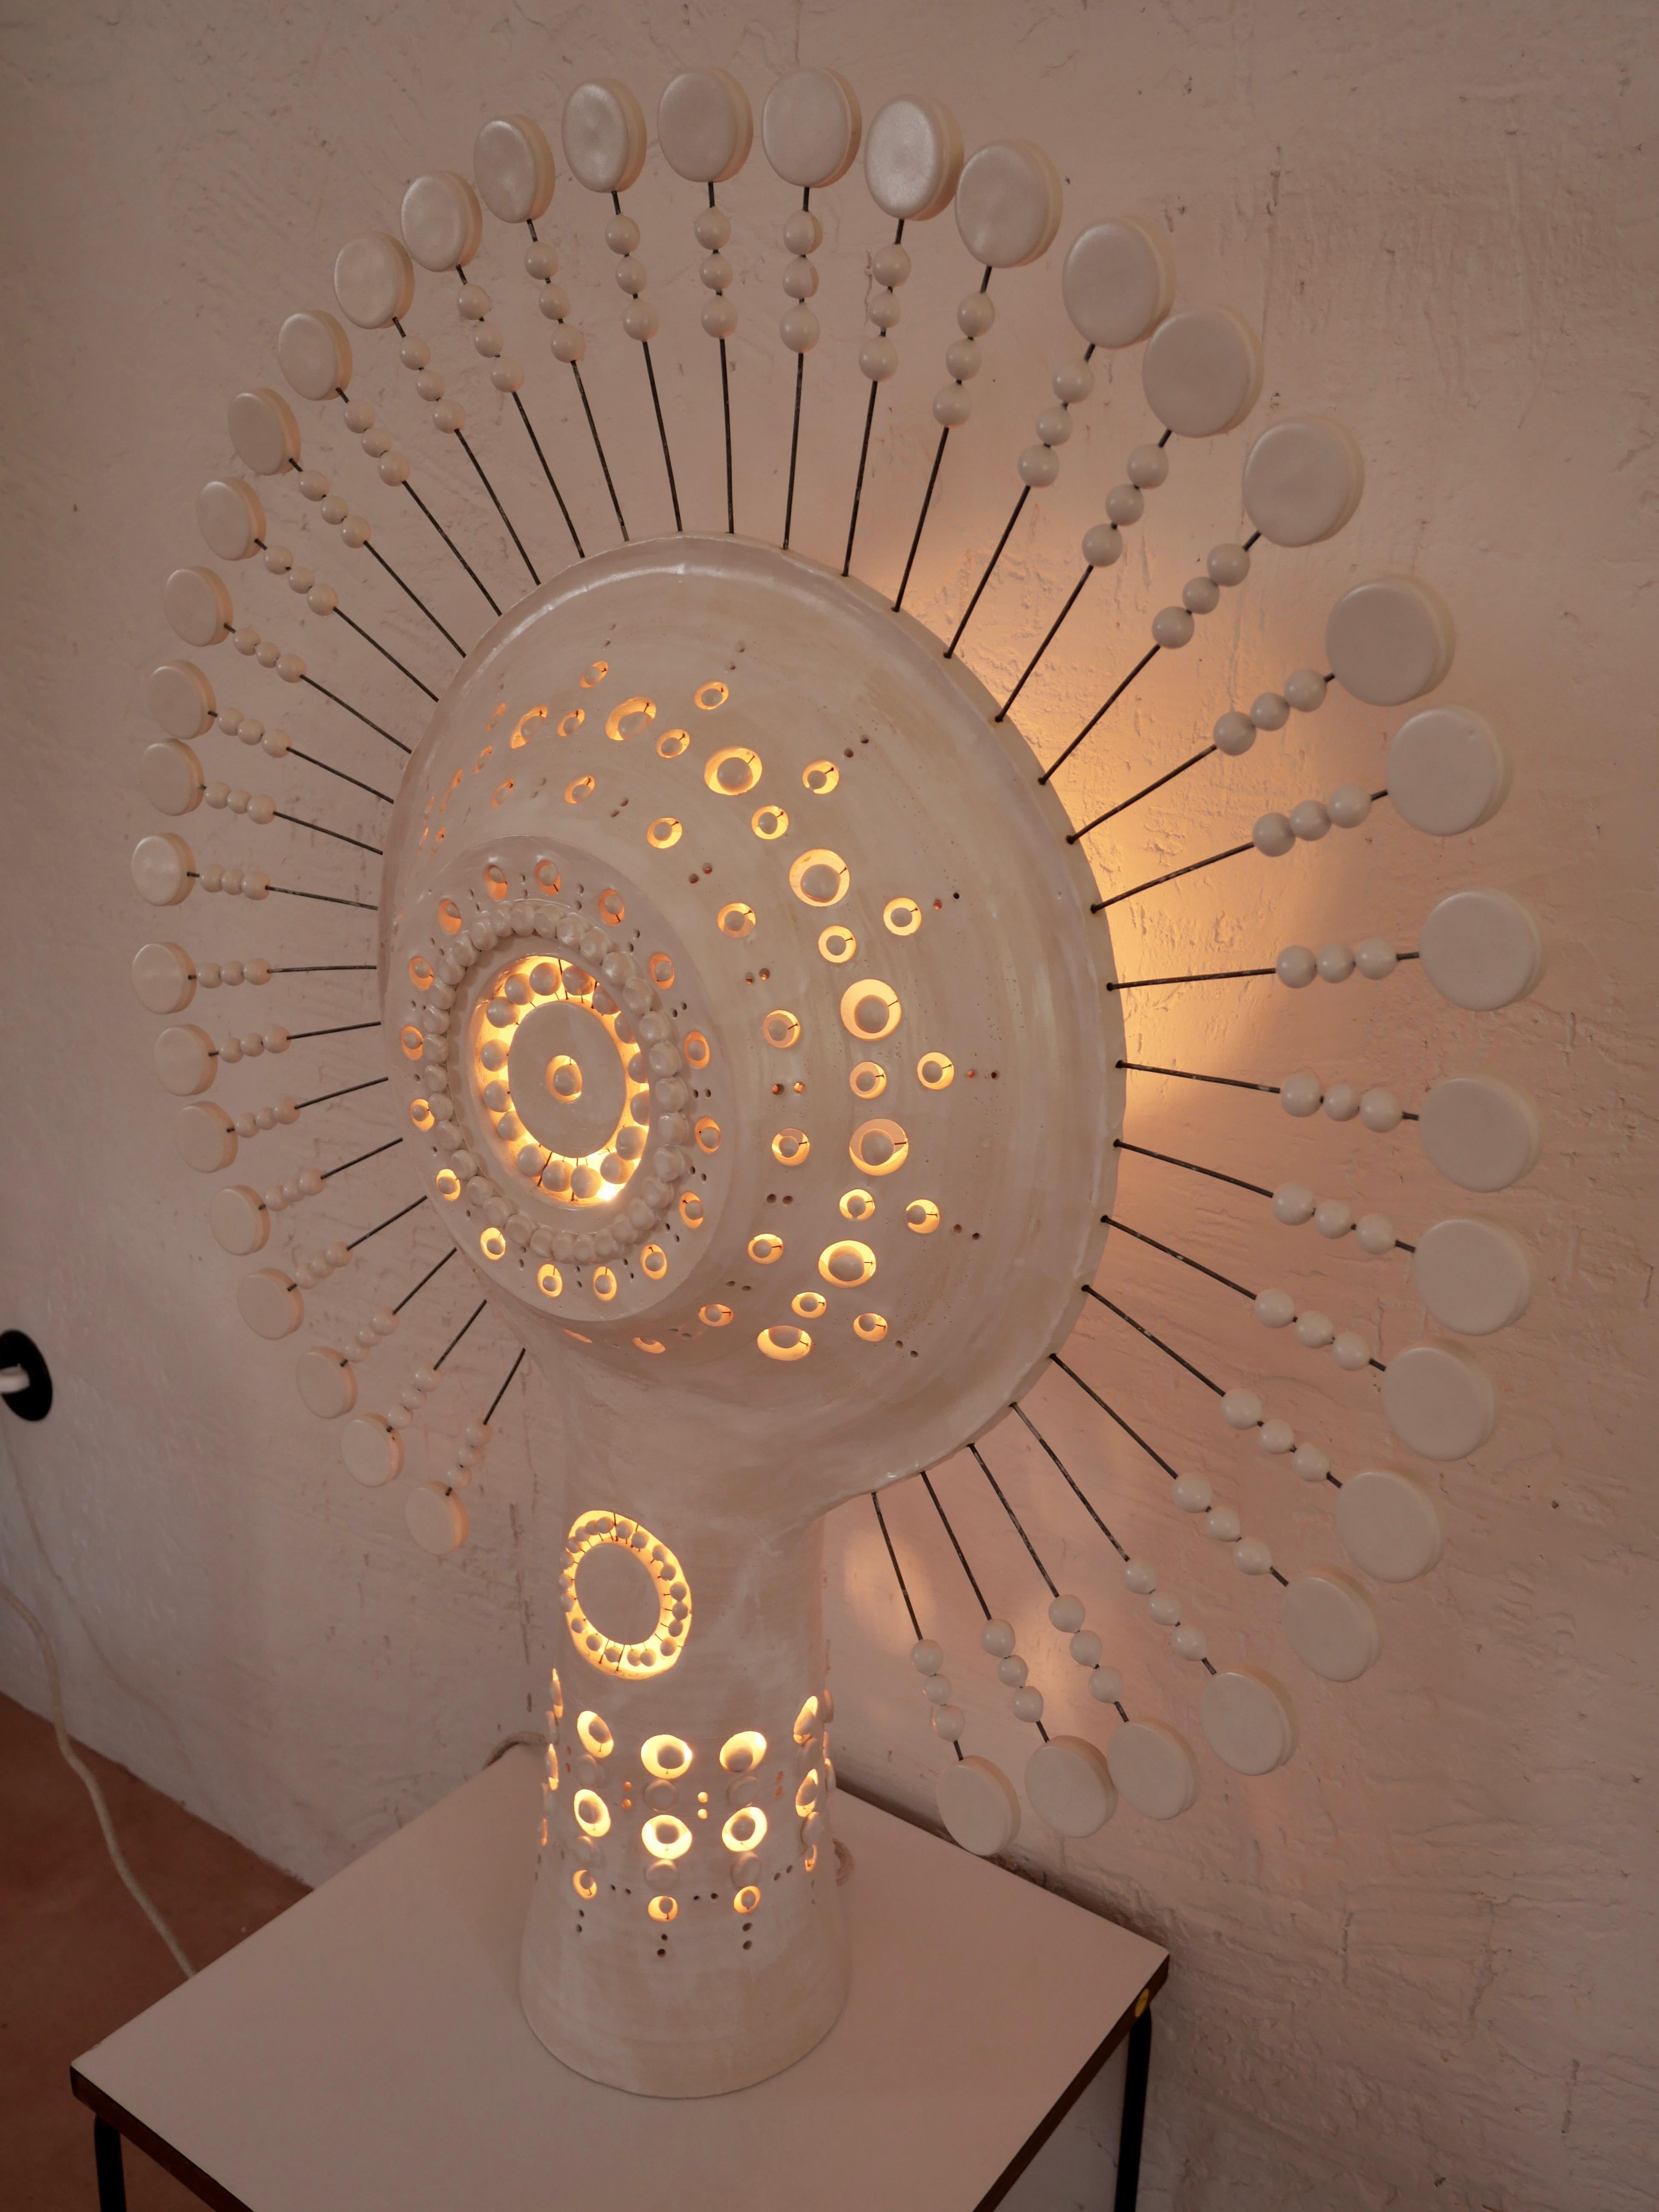 Georges Pelletier Sonnenlampe aus weiß emaillierter Keramik, eine skulpturale Steh- oder Tischleuchte, die in der Nacht ein erstaunliches Lichterlebnis und tagsüber eine beeindruckende skulpturale Präsenz in Ihren Raum bringt. Ungefähre Maße: Höhe